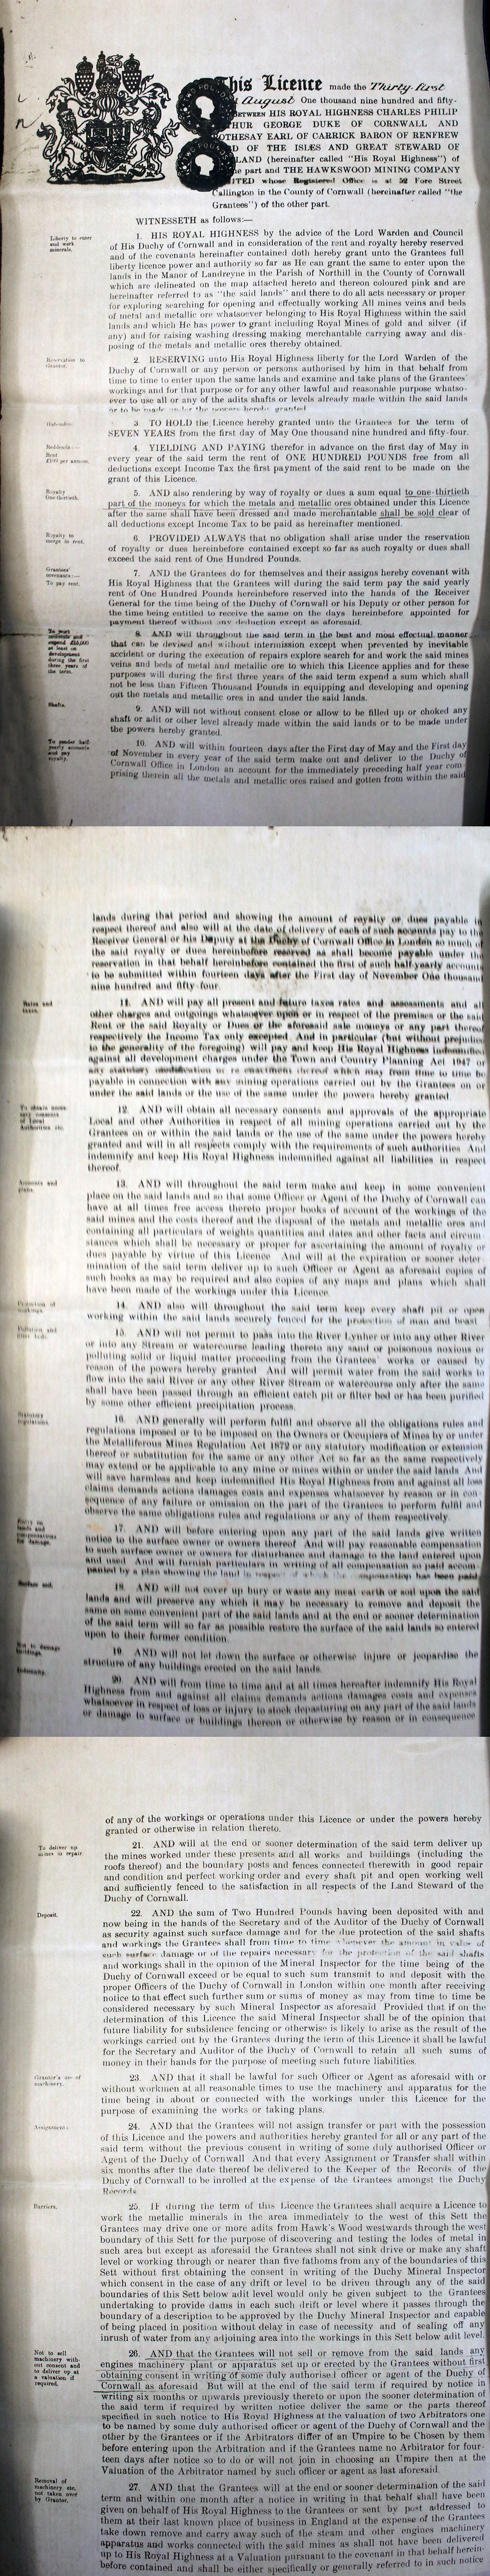 1959 Hawkswood Mine Agreement